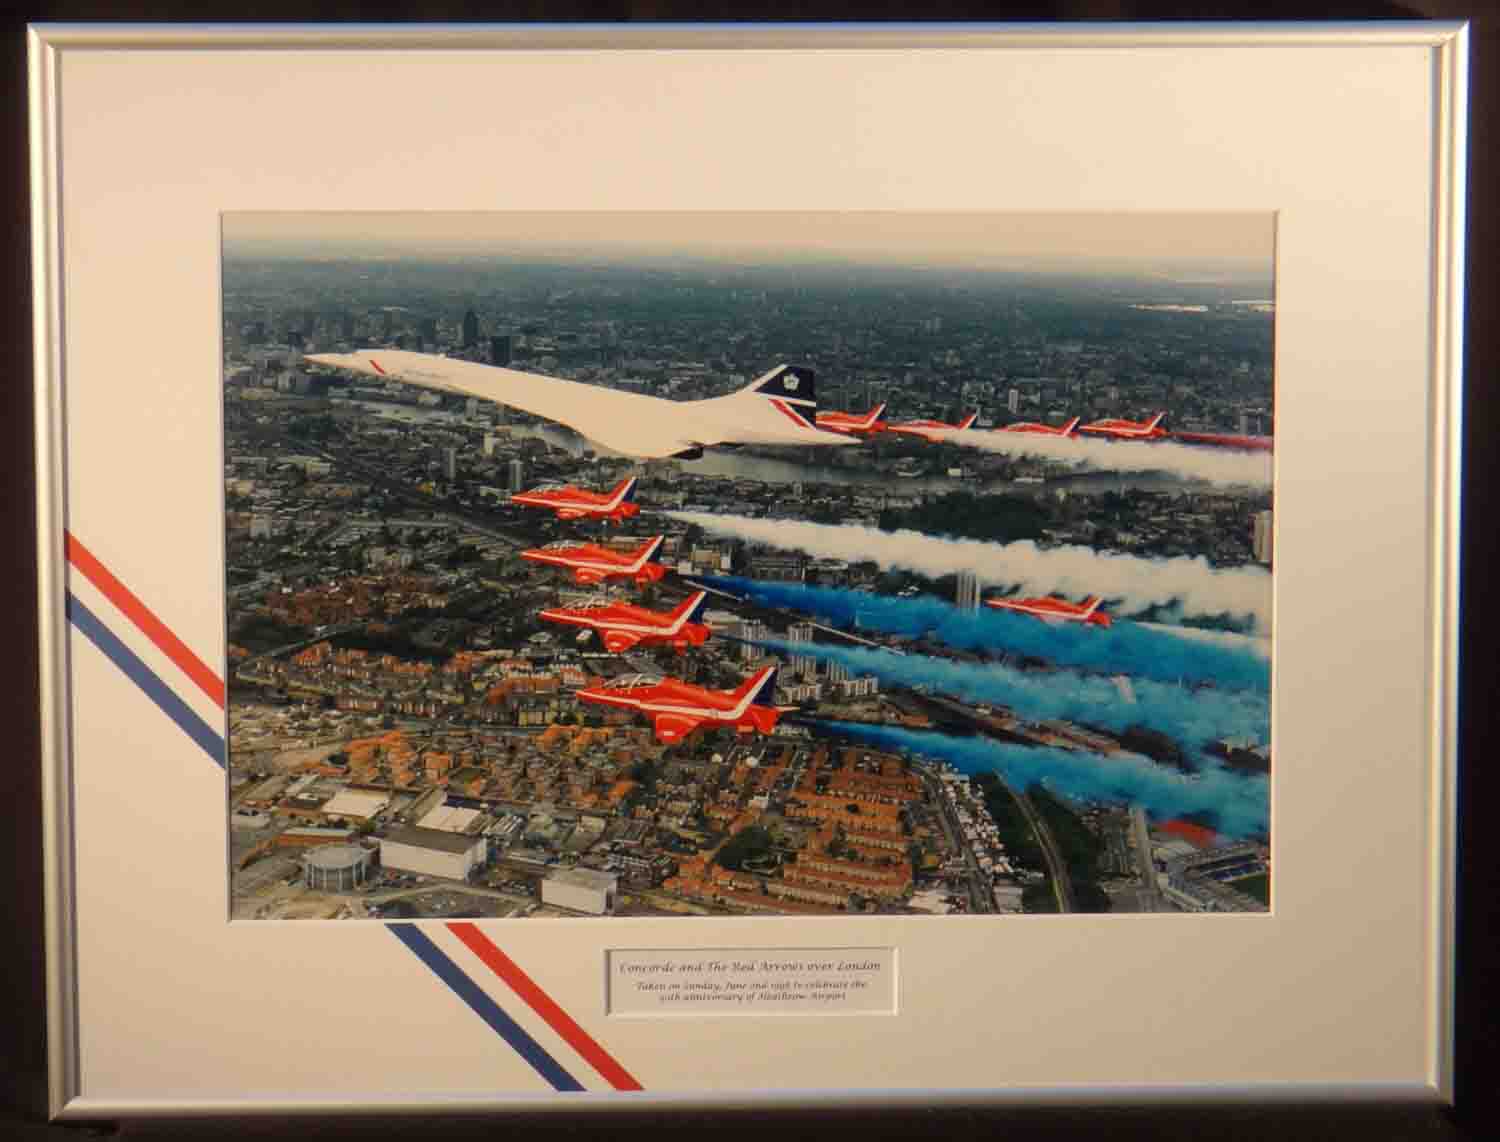  Red Arrows, Concorde